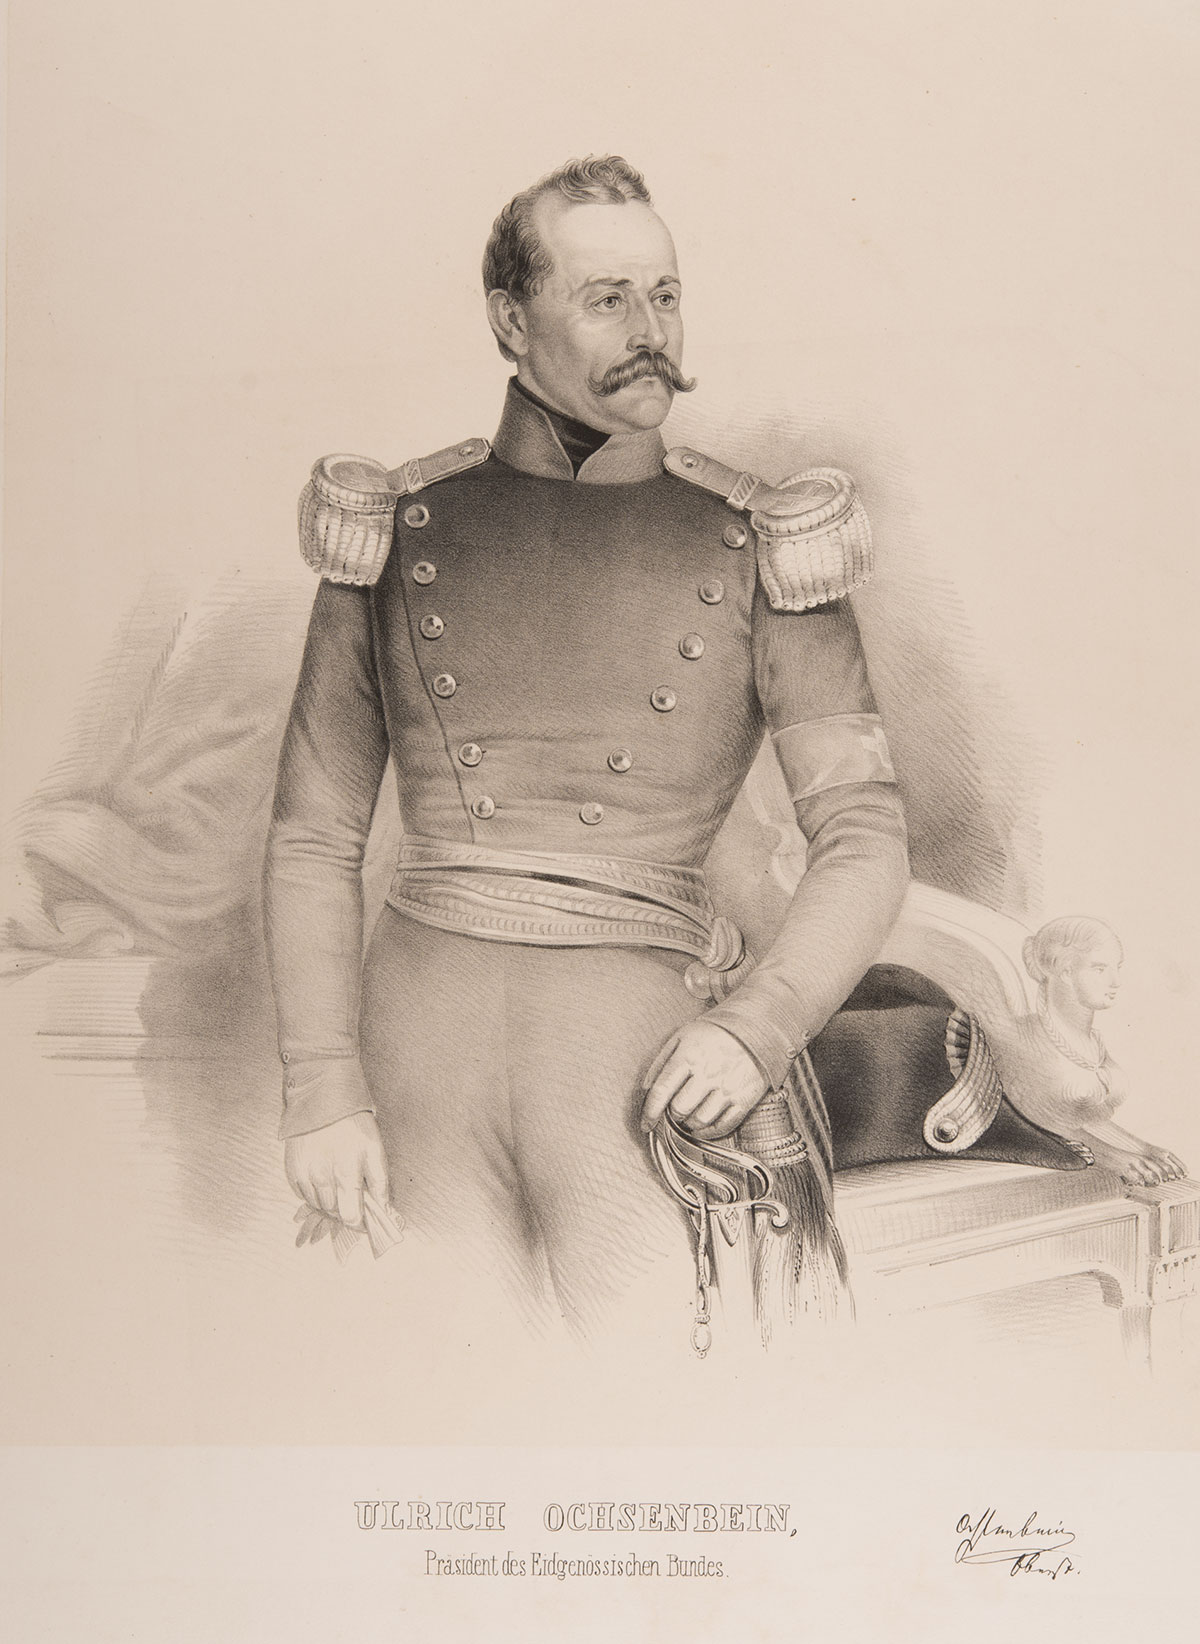 Retrato del consejero federal suizo Ulrich Ochsenbein en uniforme militar